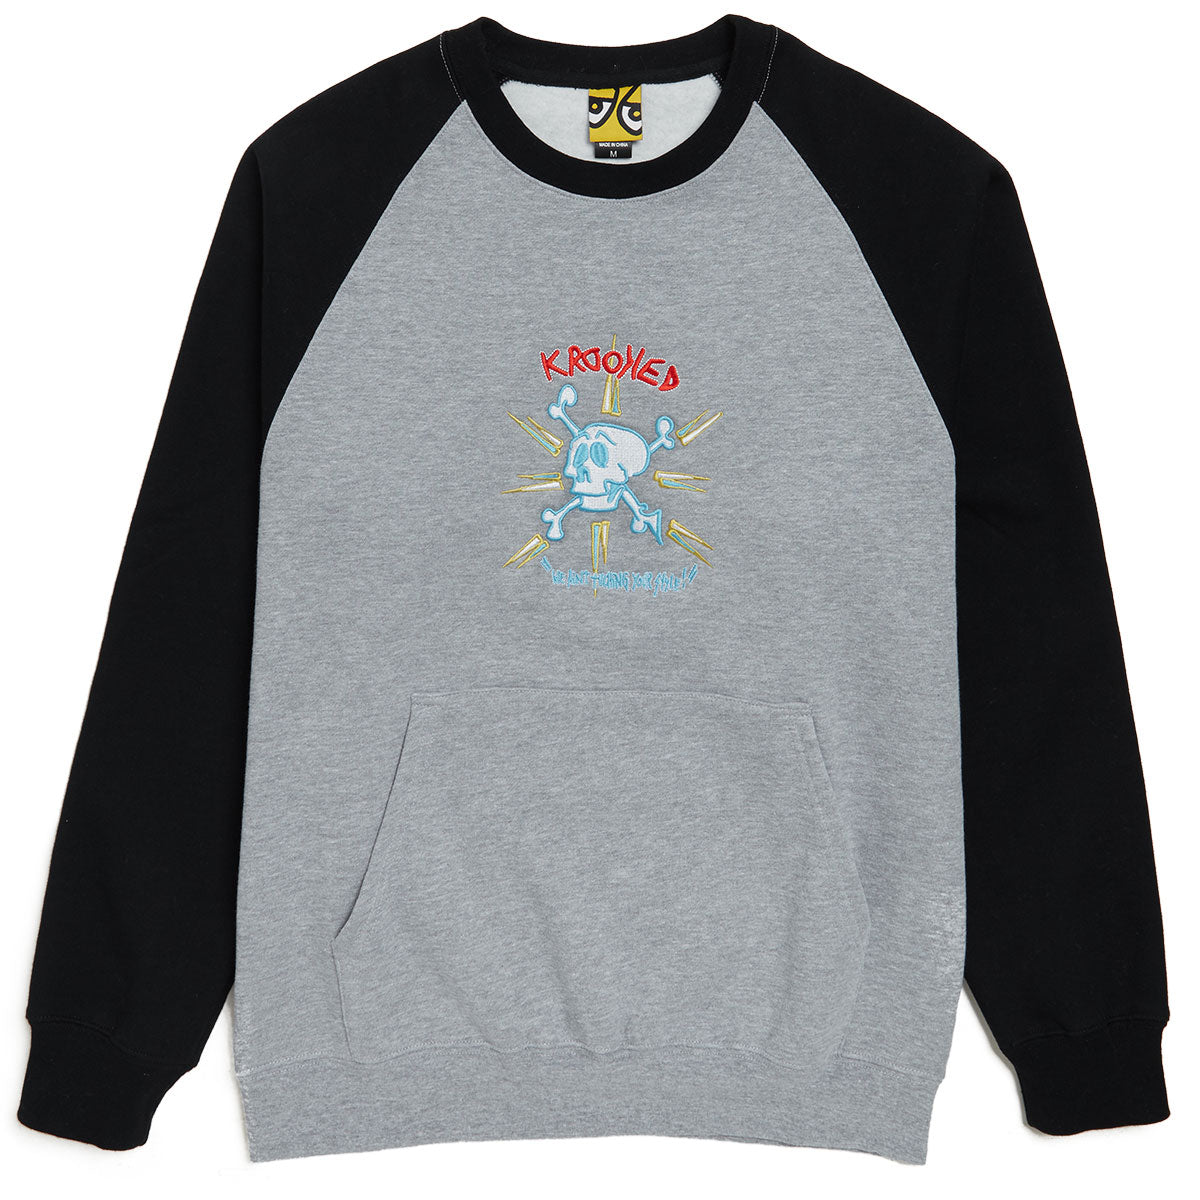 Krooked Style Emb Sweatshirt - Heather/Black/Multi Color image 1